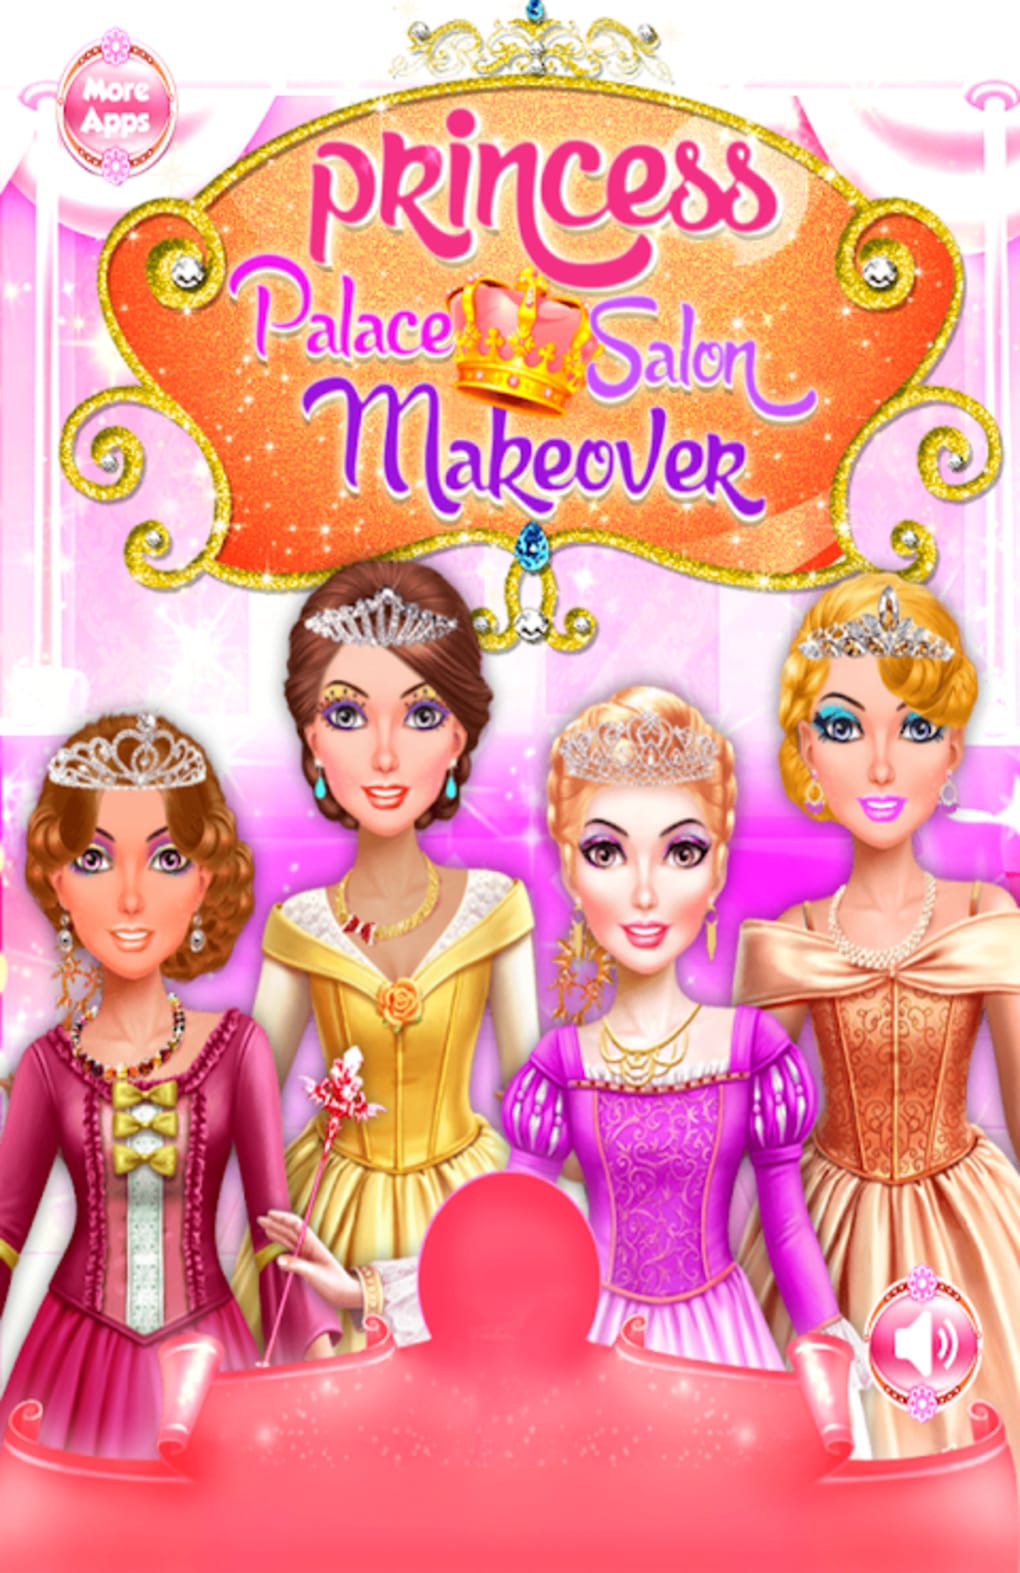 Salão de Beleza de Princesa APK (Android Game) - Baixar Grátis